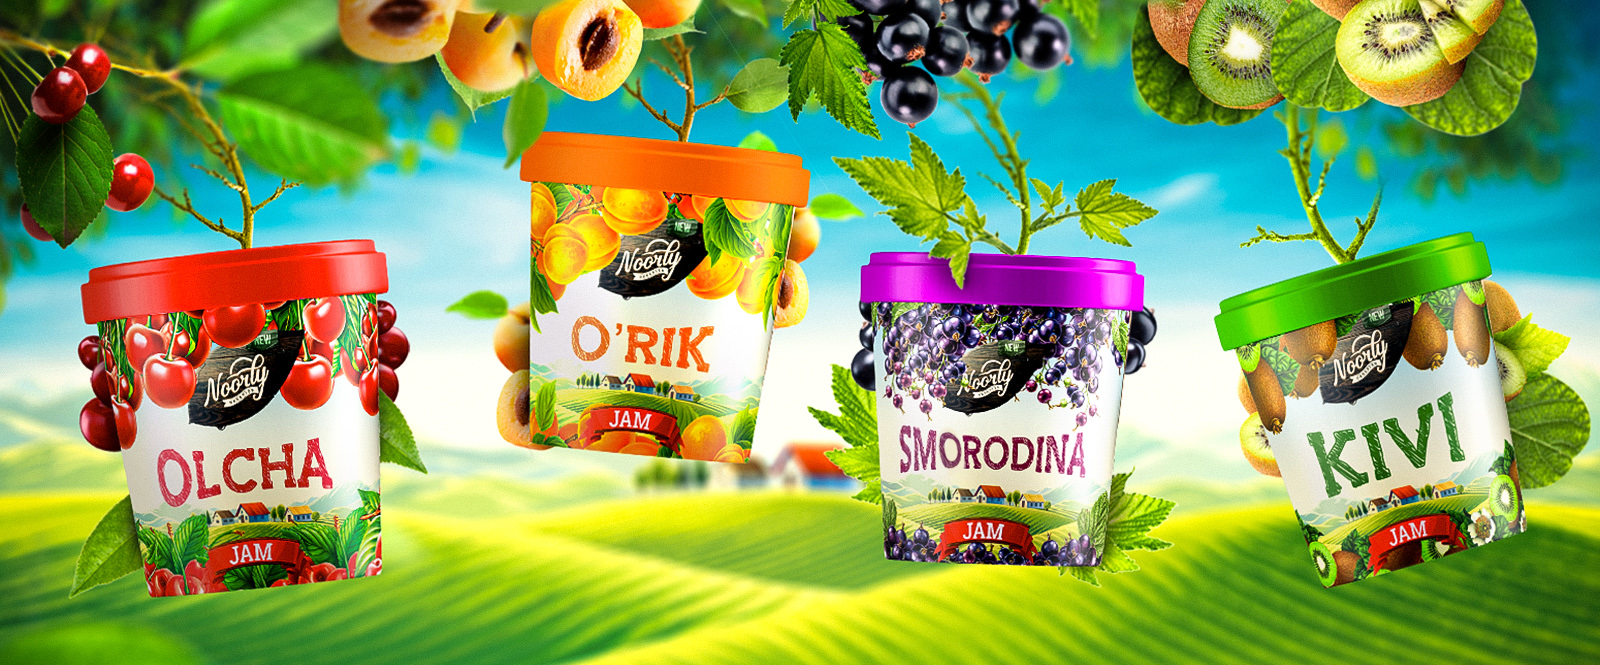 Bright Branding for Uzbek Fruit Jam by Minim Brand Design